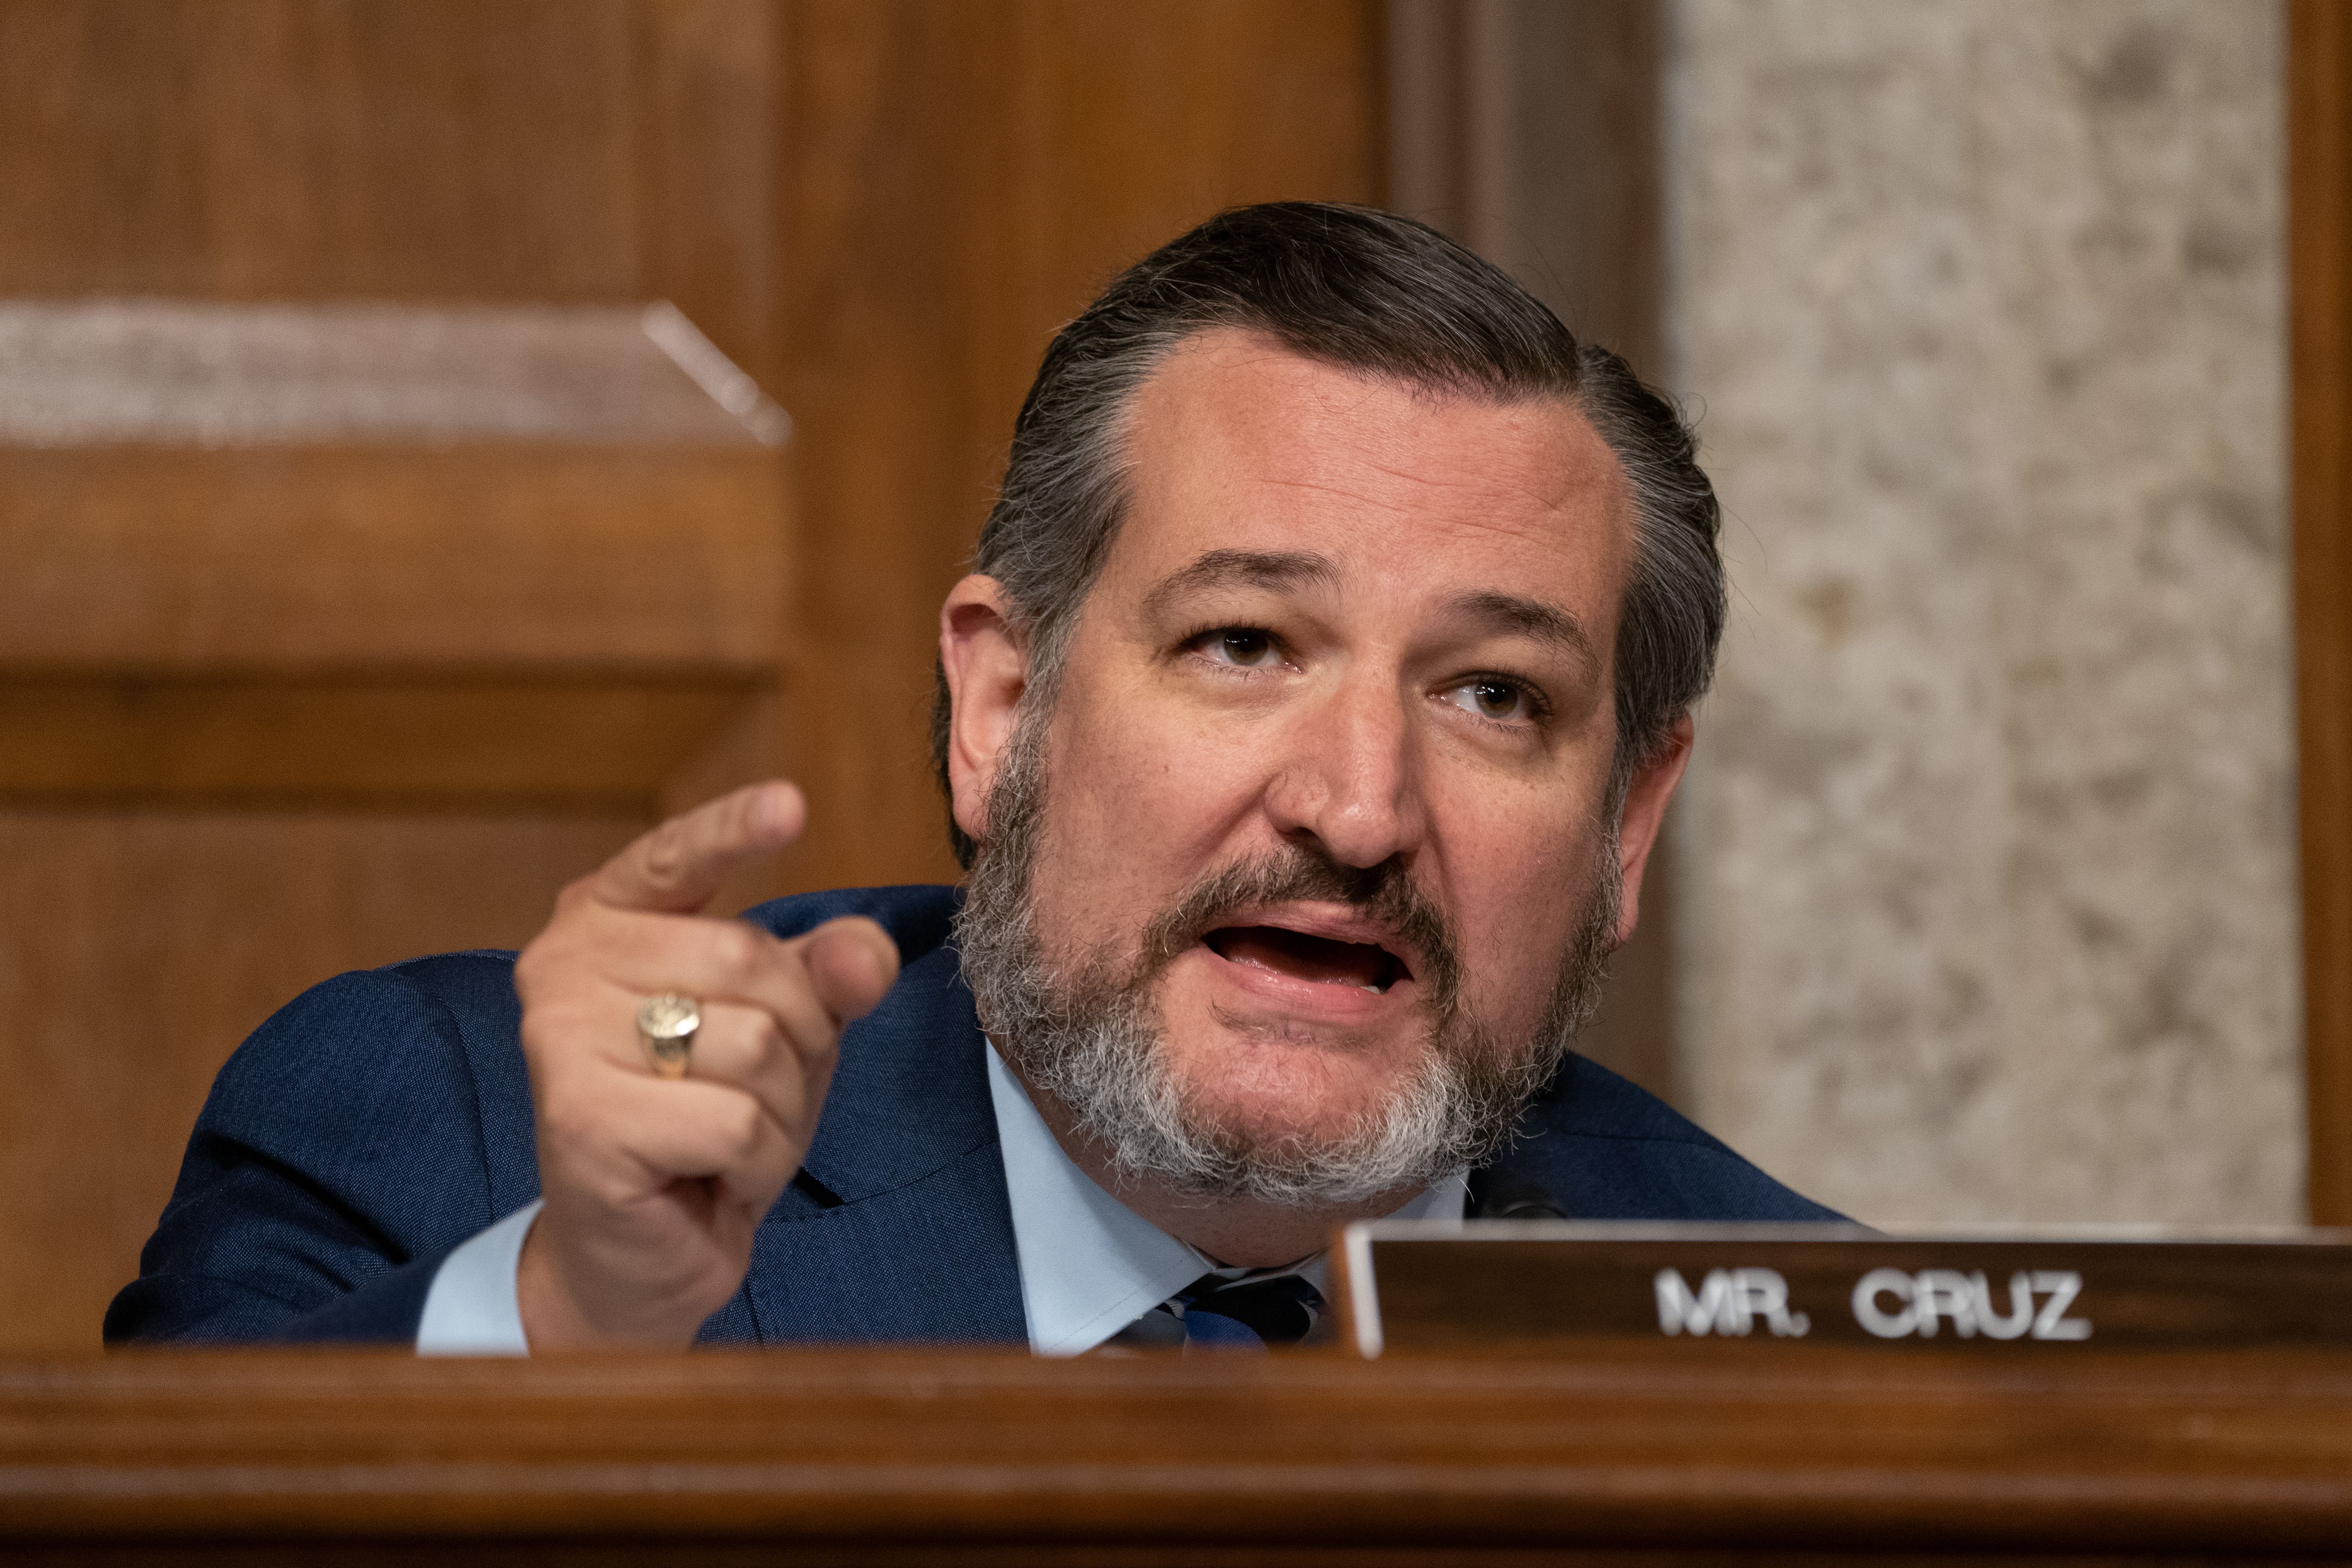 Ted Cruz speaks in the Senate.